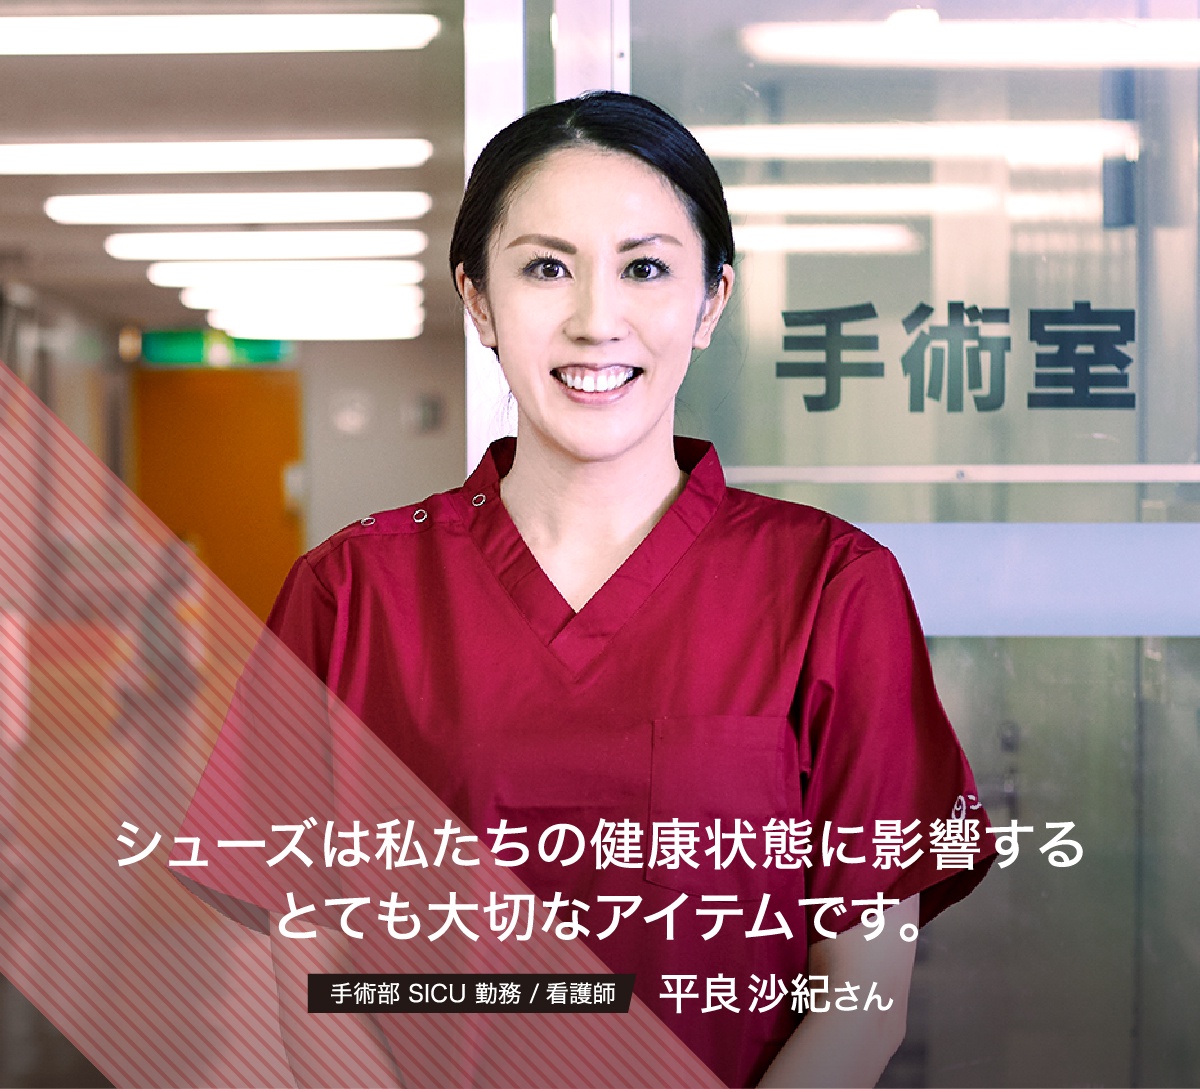 手術部 SICU 勤務 / 看護師 平良沙紀さん シューズは私たちの健康状態に影響するとても大切なアイテムです。